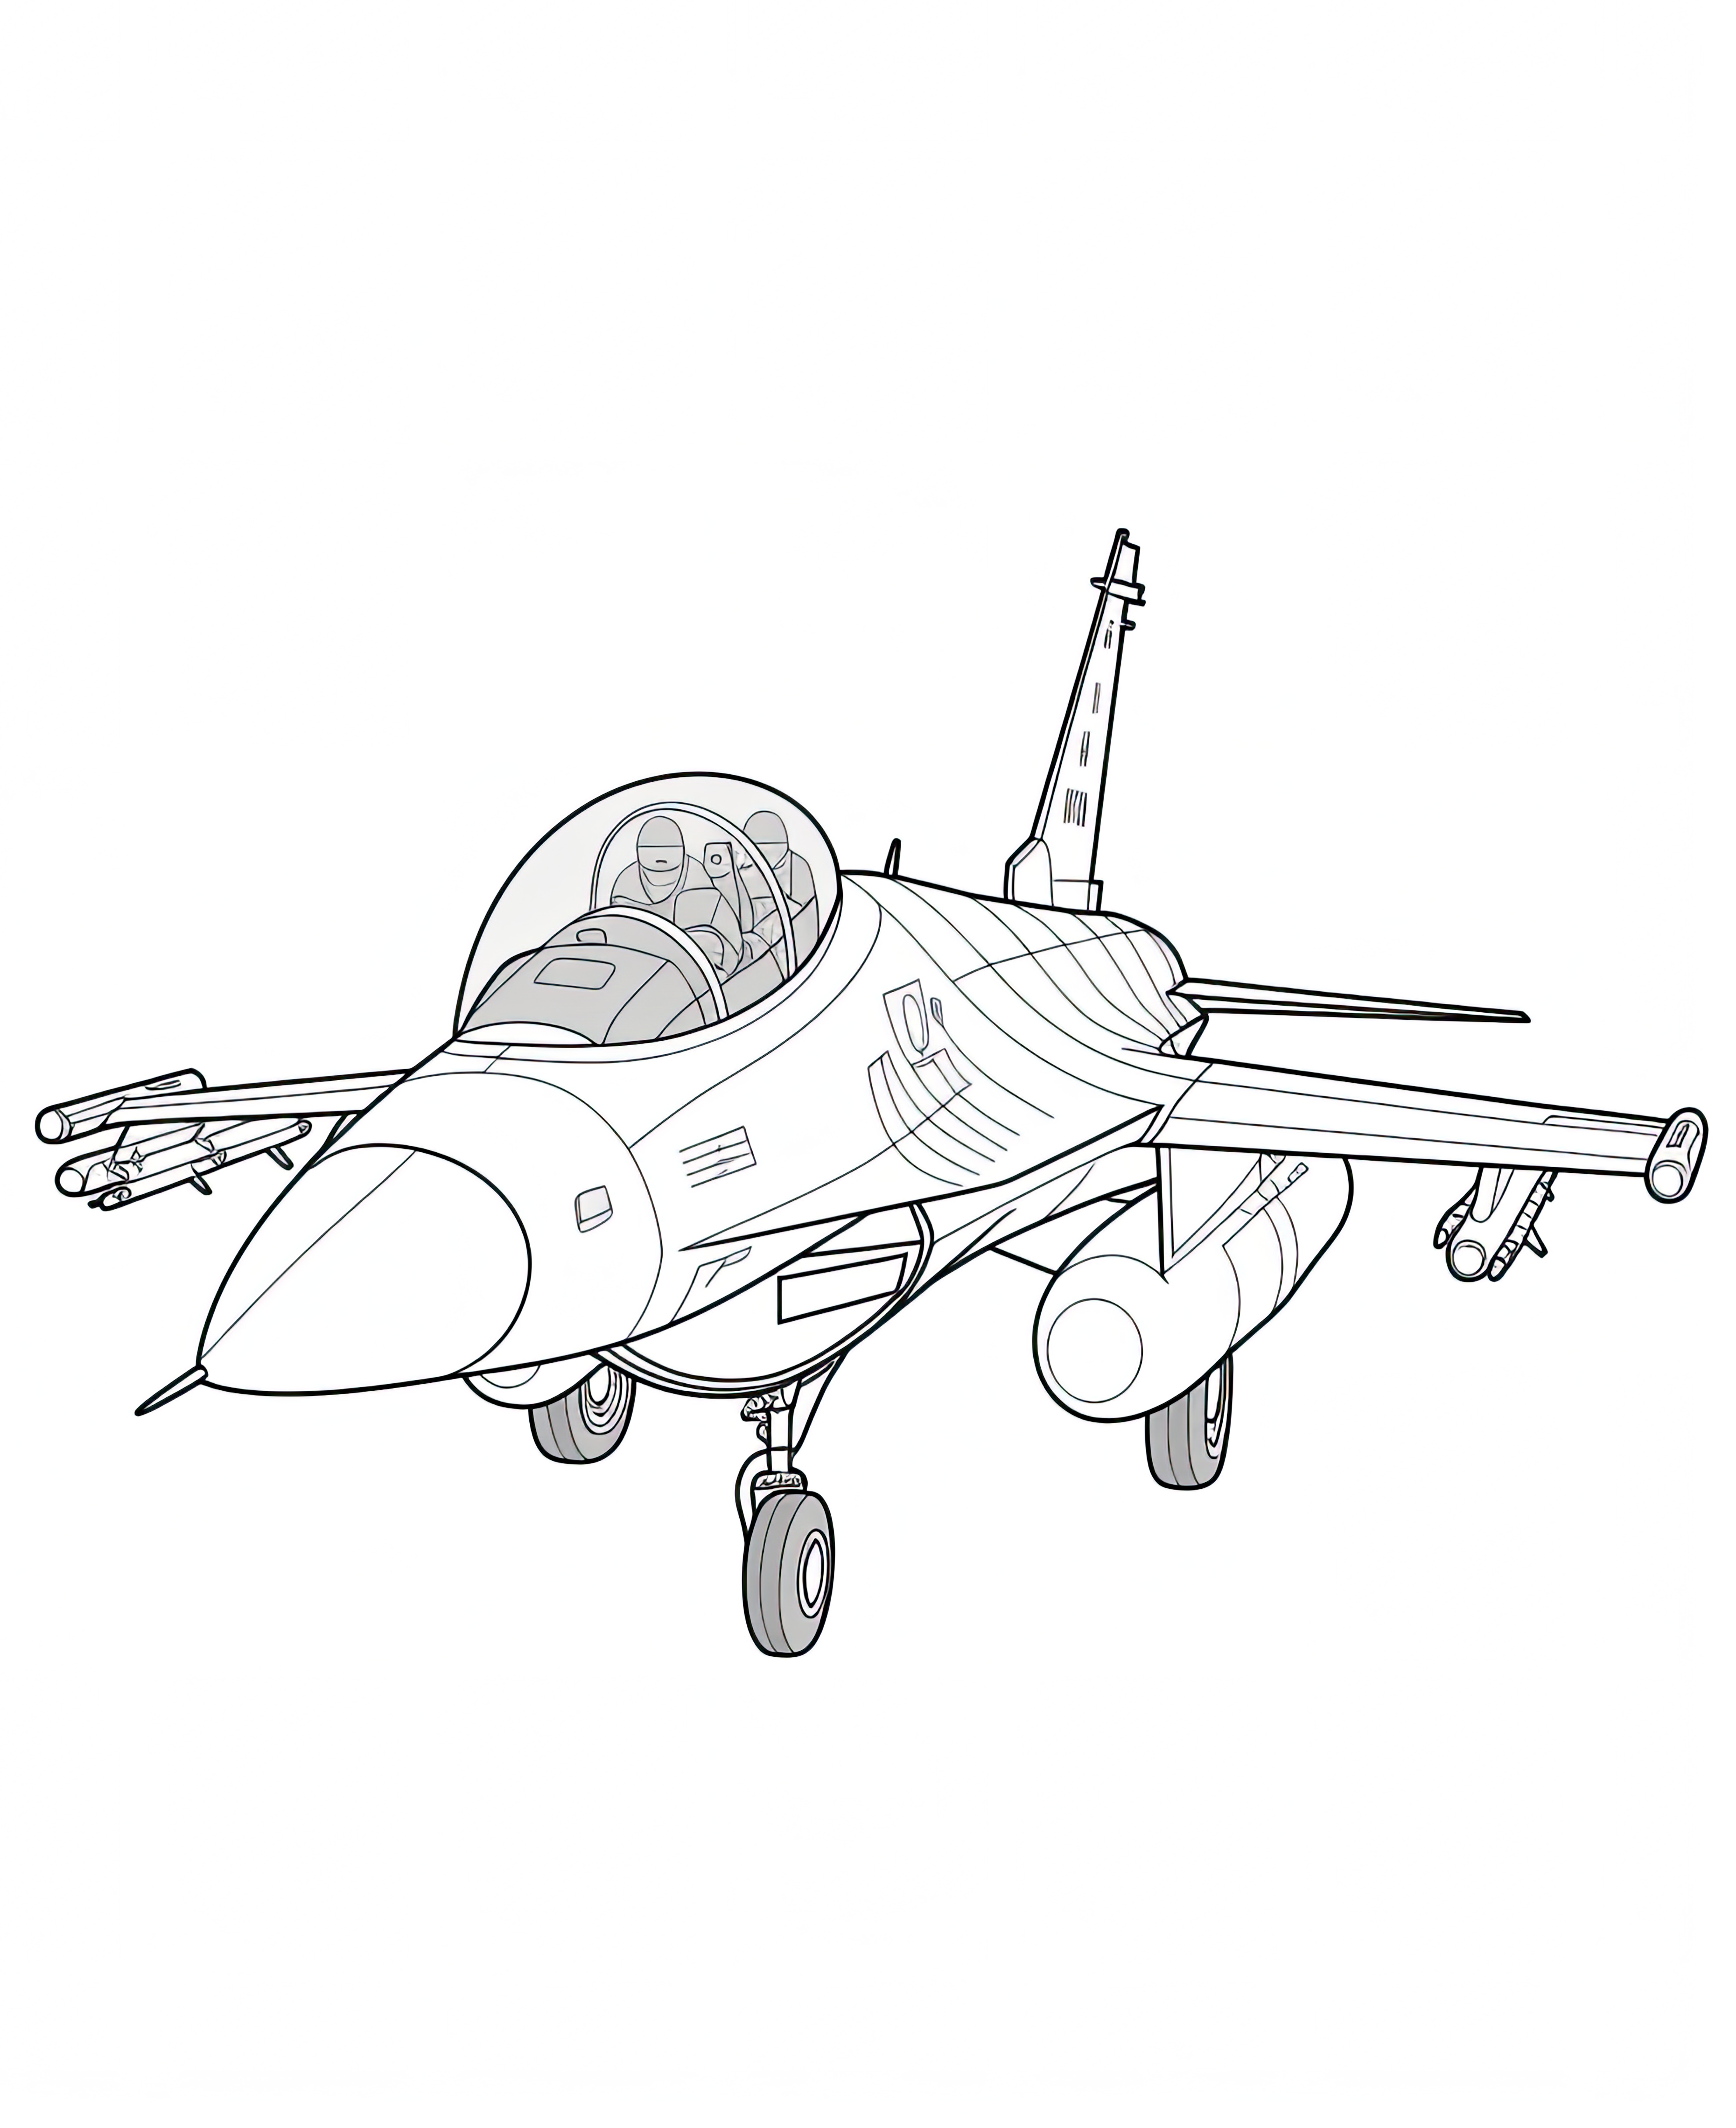 Раскраска боевой самолет истребитель формата А4 в высоком качестве